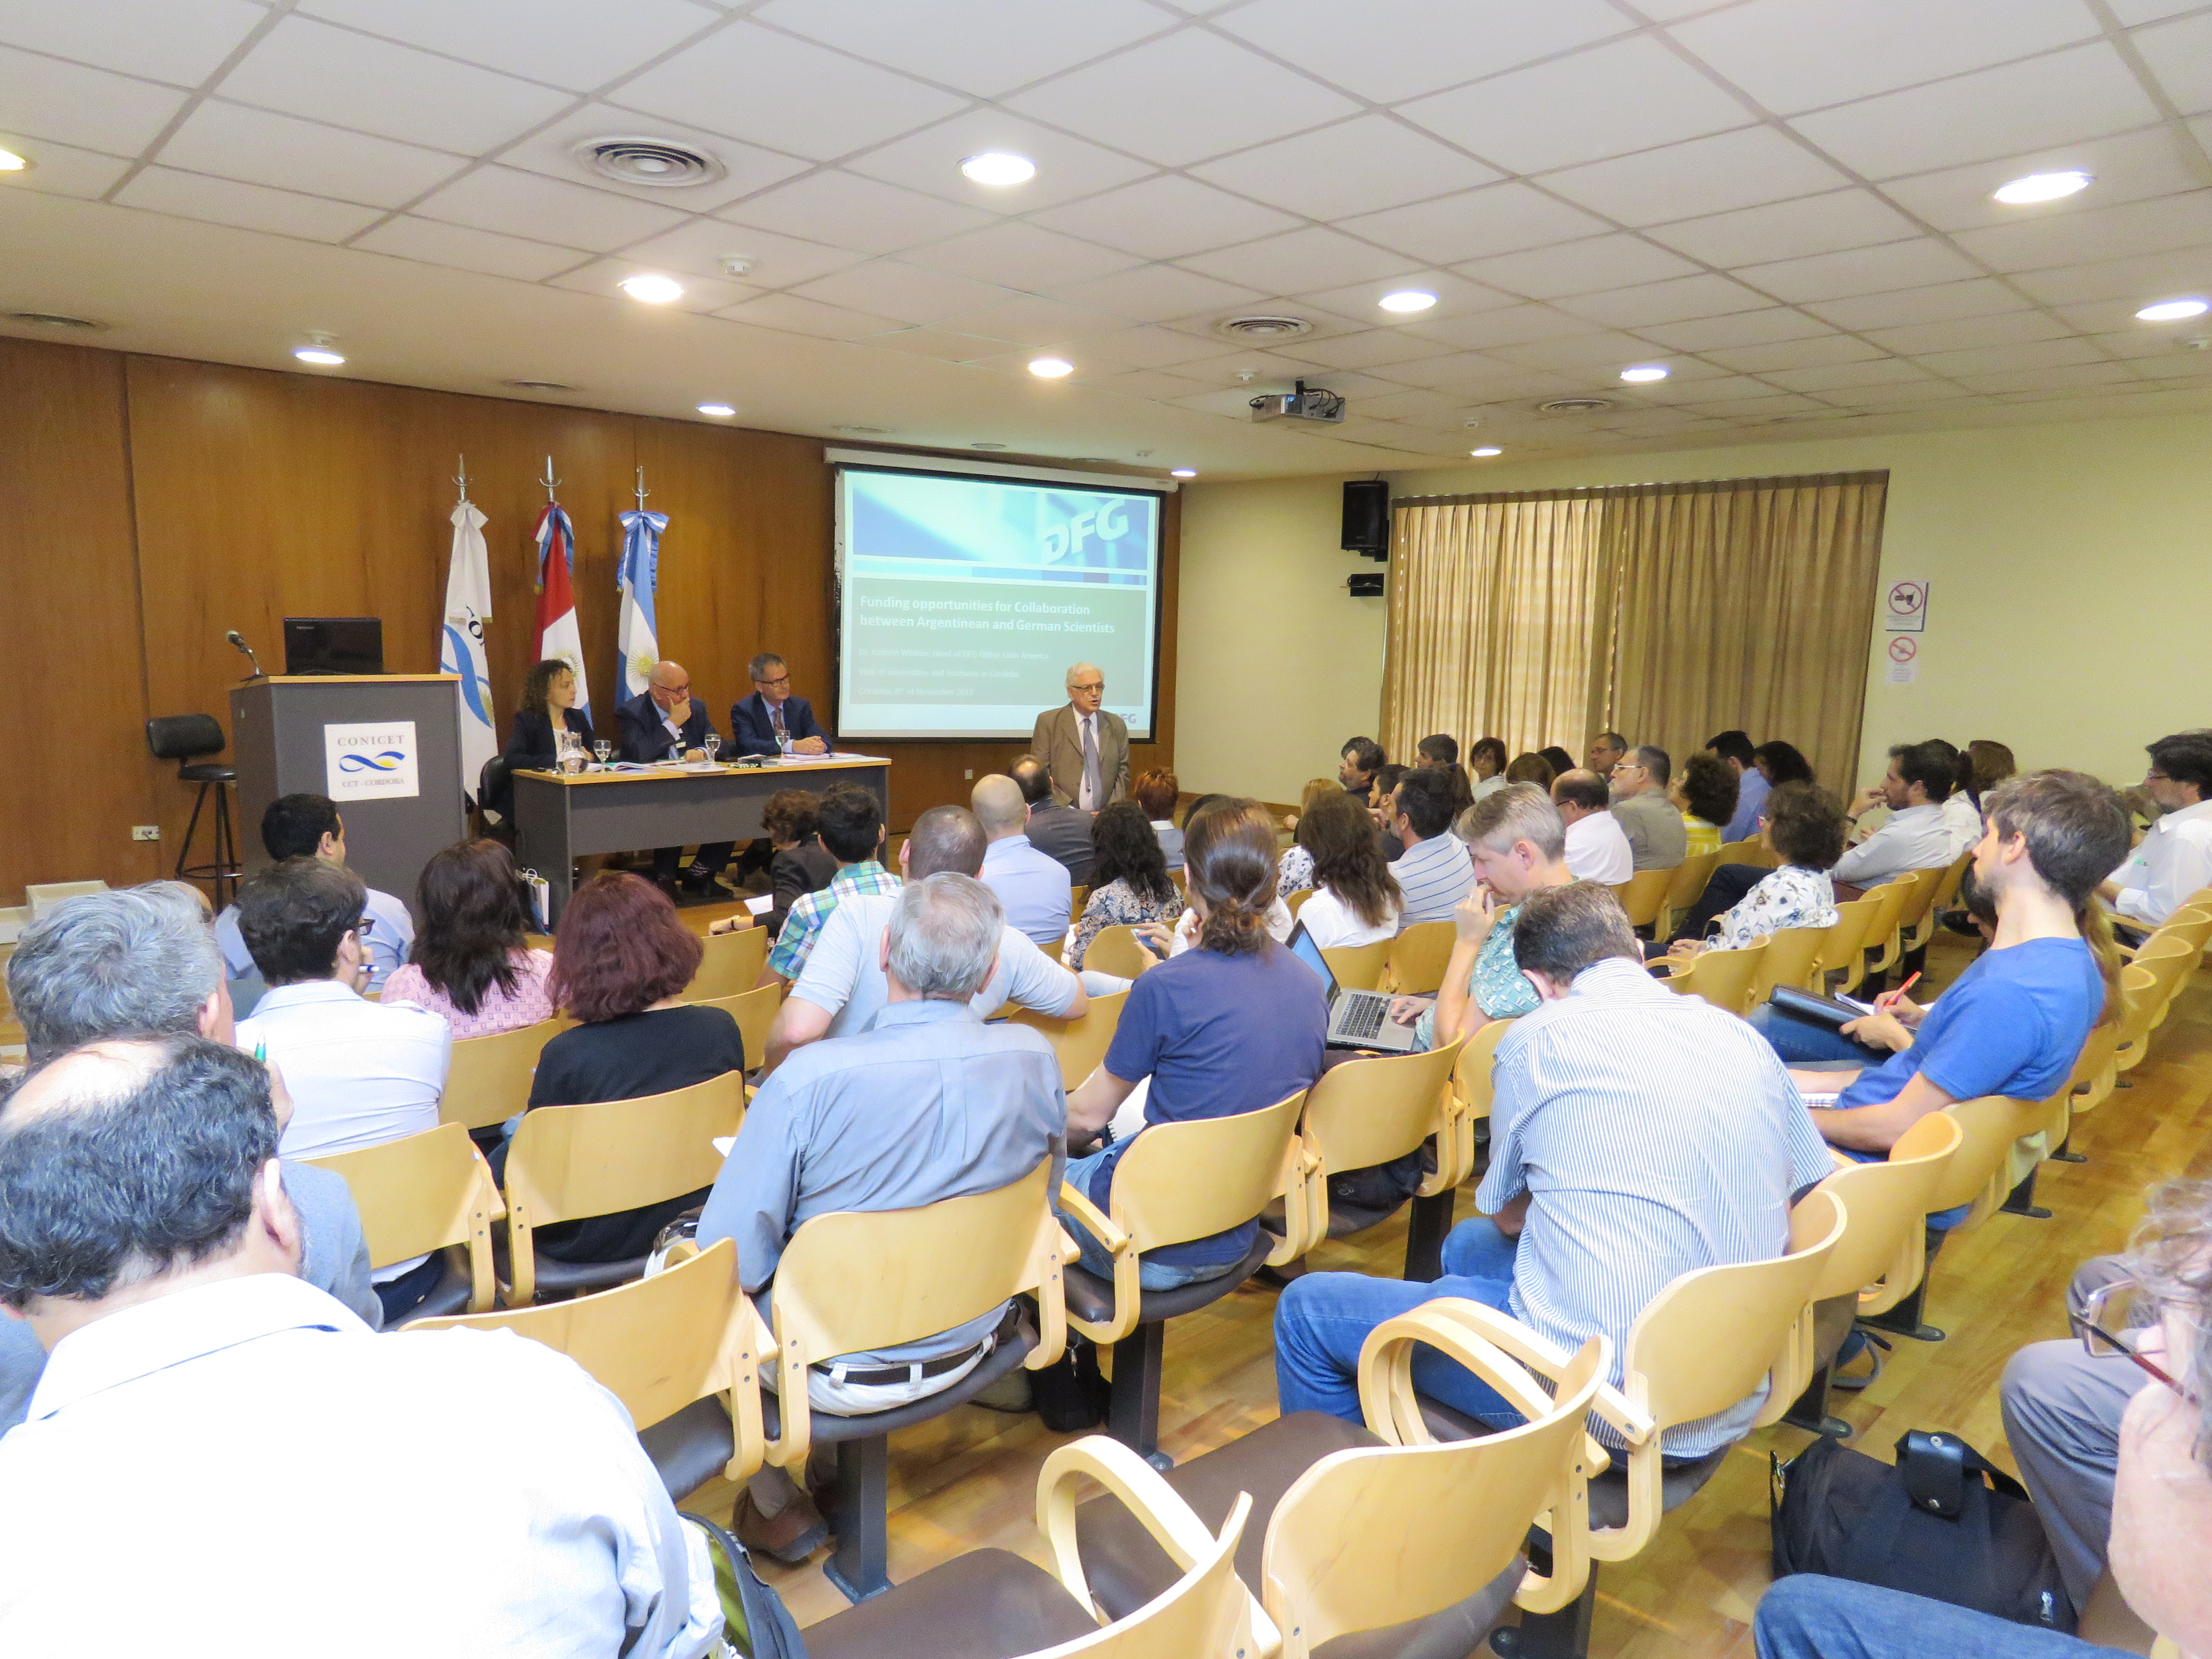 El Prof. Dr. Pedro Depetris dándole la bienvenida a la audiencia durante el evento informativo del CONICET en la Universidad Nacional de Córdoba